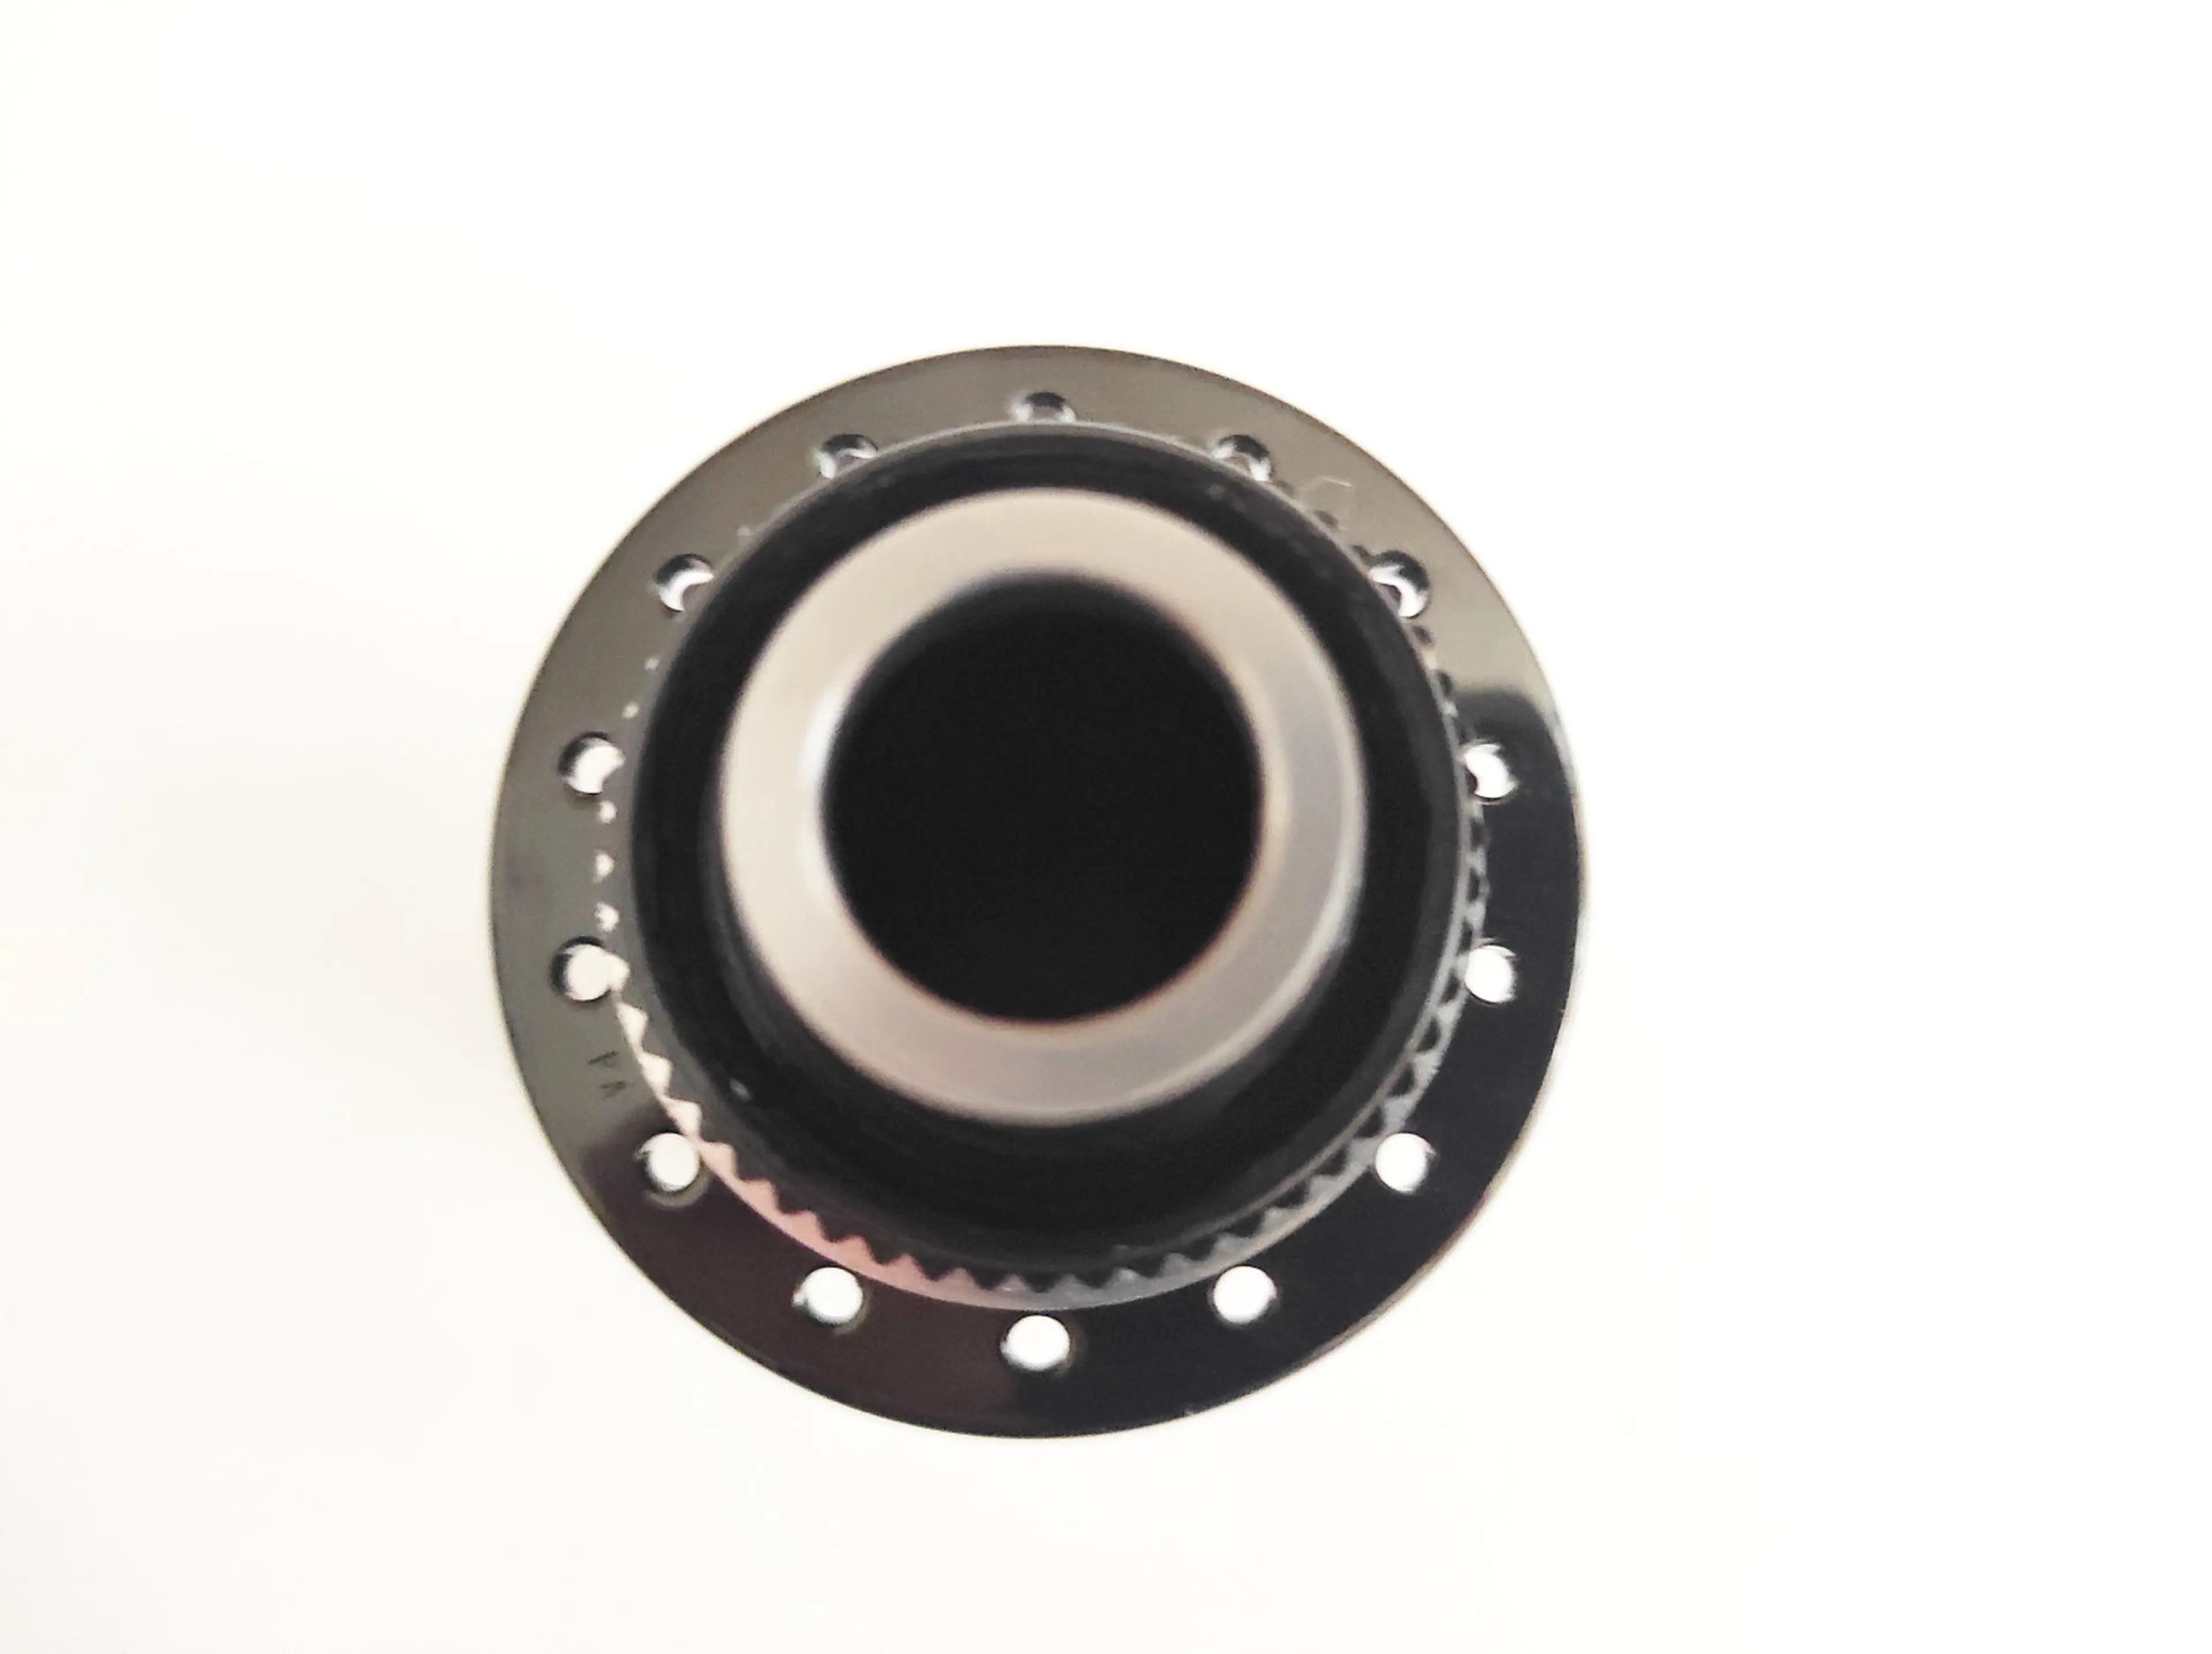 10. Butuc fata Shimano XTR HB-M9010 15x100mm, 28h, disc centerlock nou